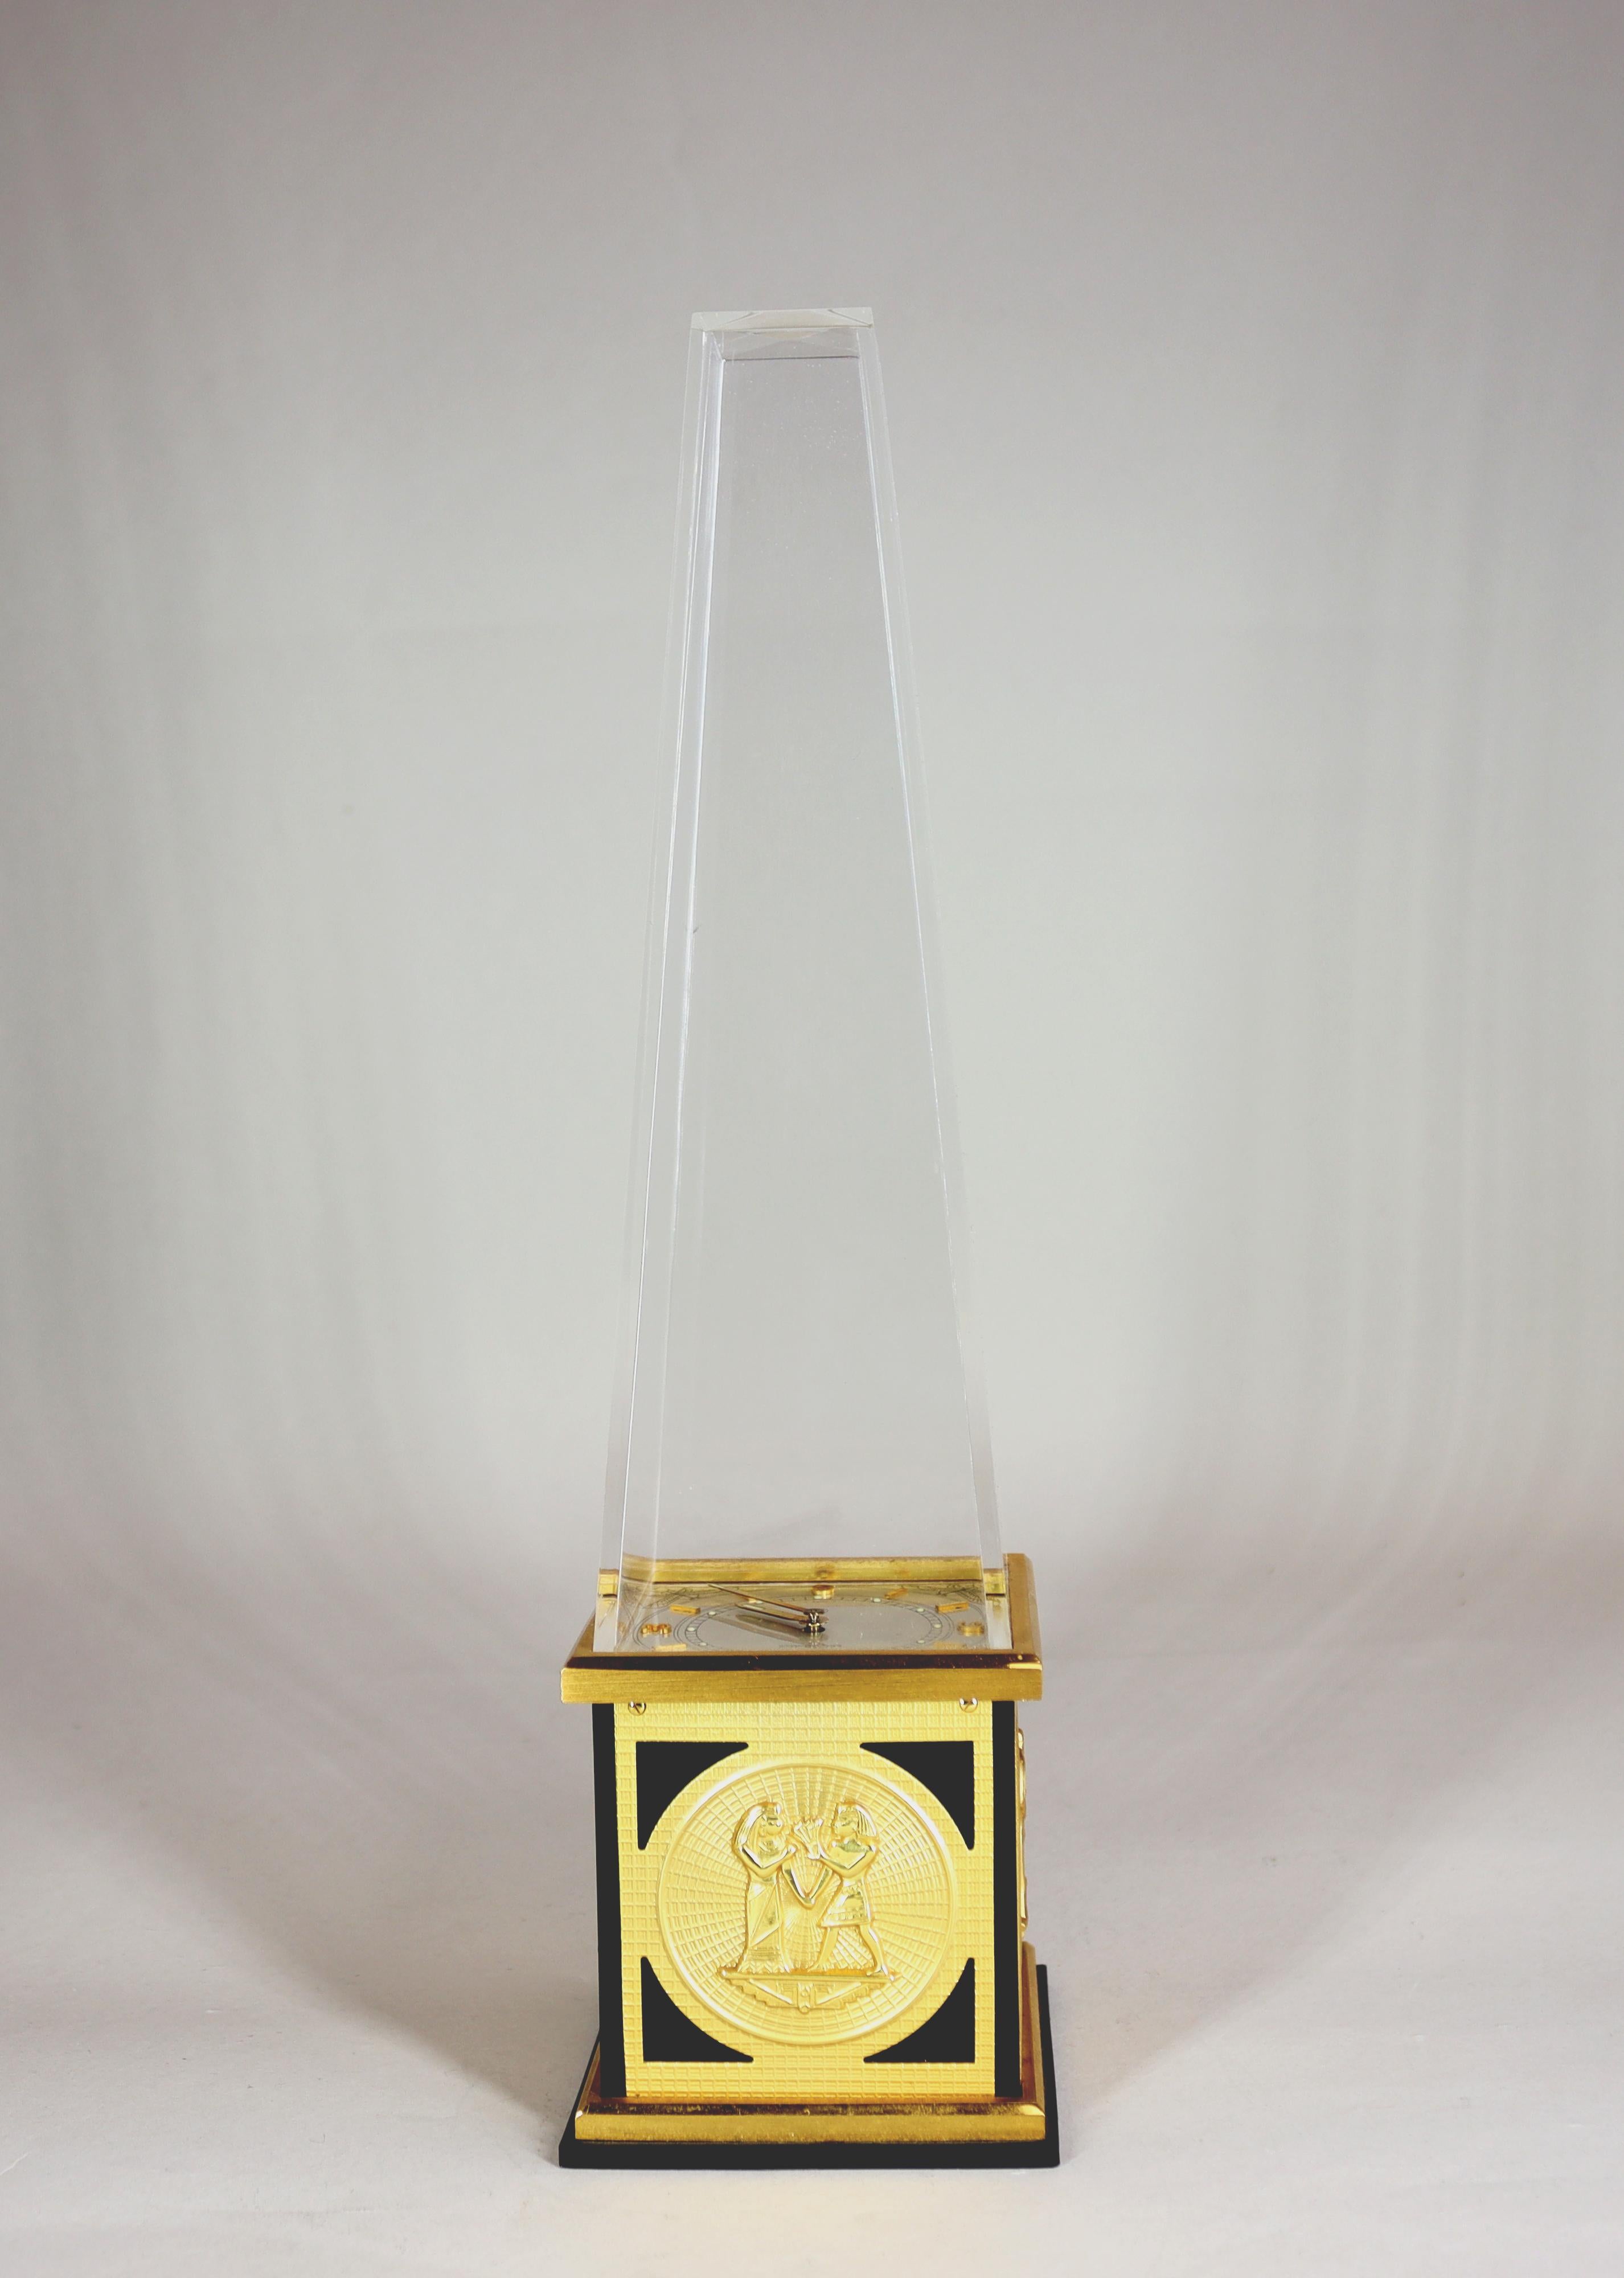 Pendule de bureau en forme d'obélisque égyptien fabriquée par LeCoultre avec un mouvement de 8 jours dans la base, un cadran argenté brillant, des chiffres et des bâtons dorés sous un obélisque en plexiglas. La base laquée noire est ornée de